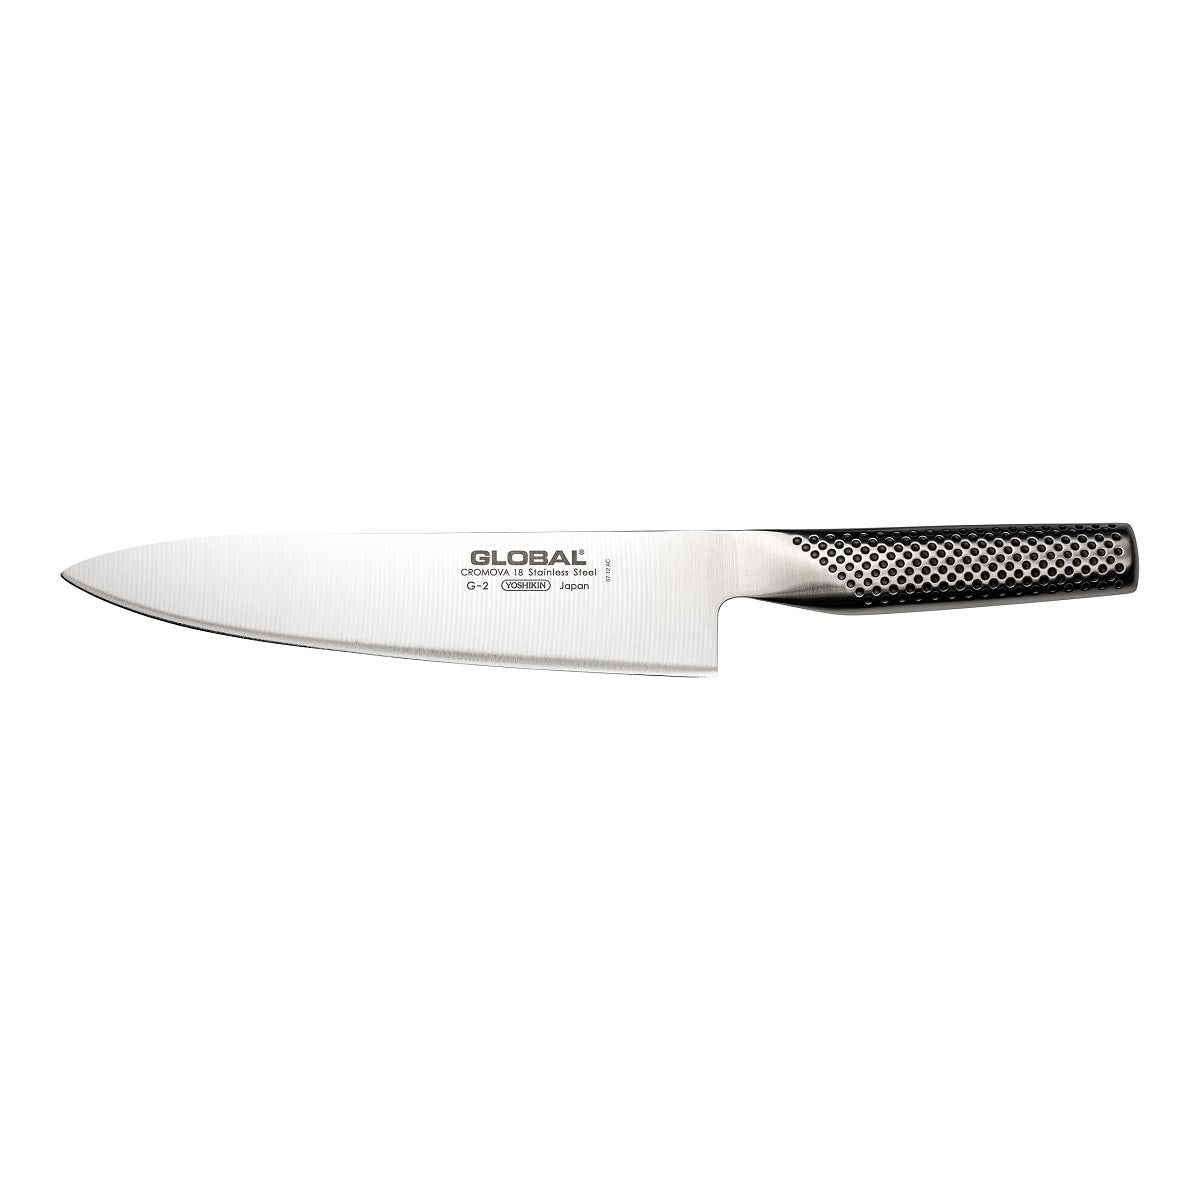 Global-G-2-20cm-Cooks-Knife